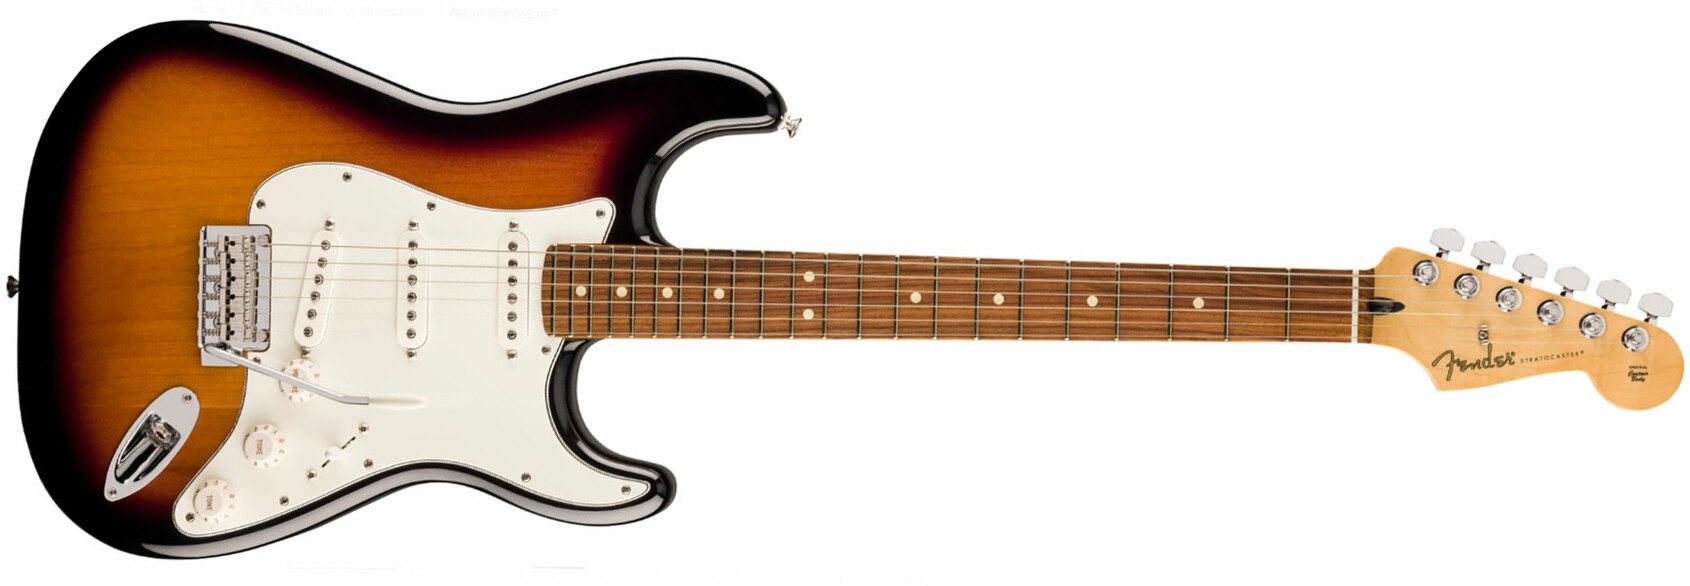 Fender Strat Player 70th Anniversary 3s Trem Pf - 2-color Sunburst - Elektrische gitaar in Str-vorm - Main picture